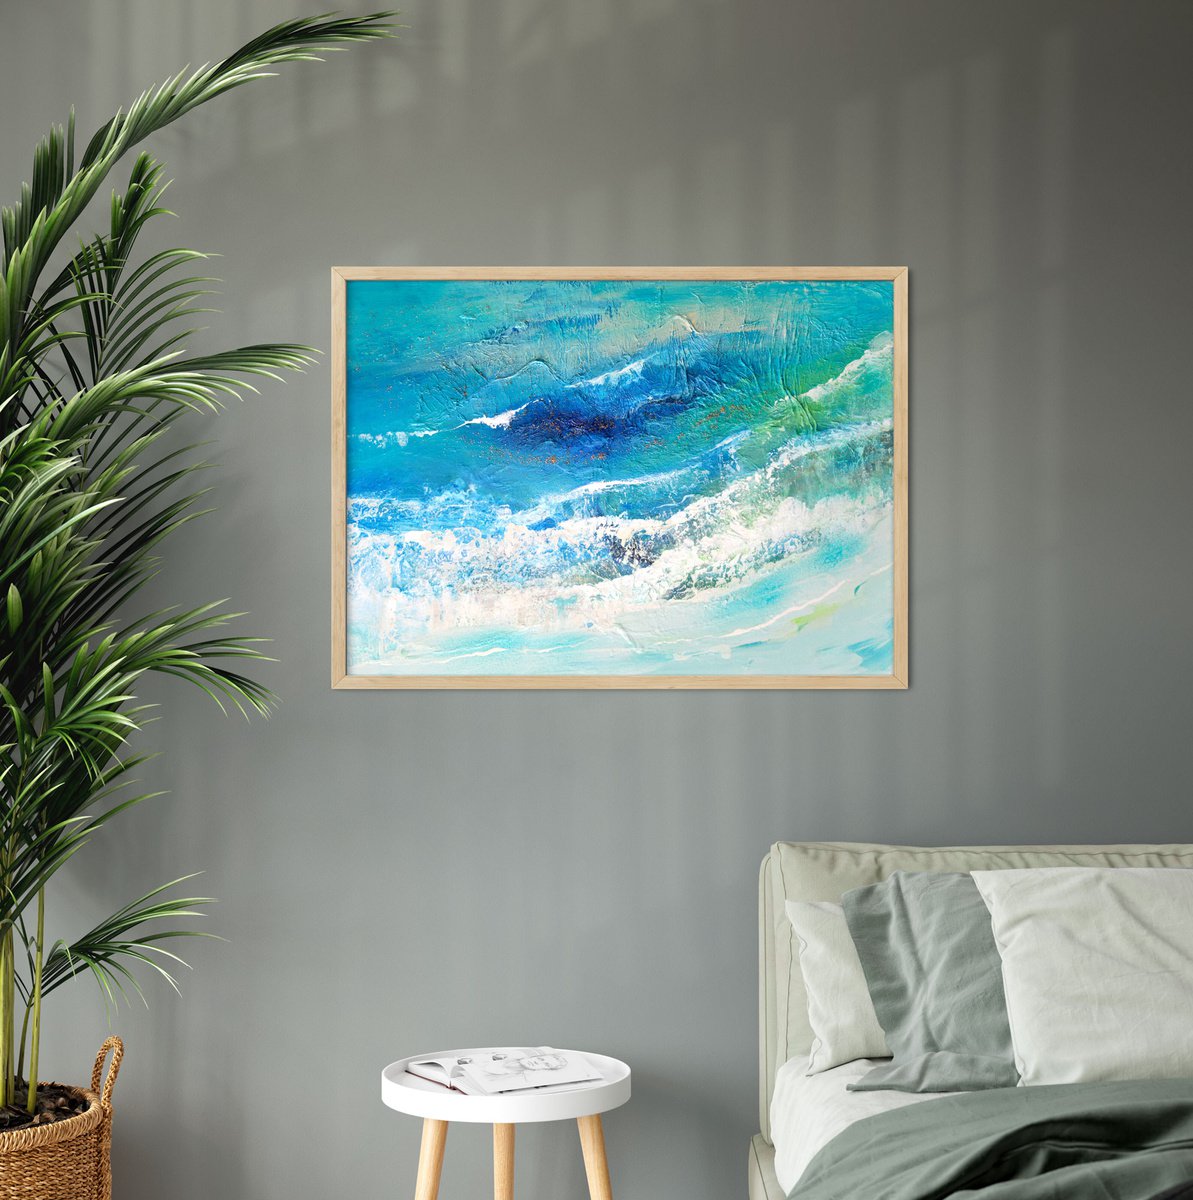 Marina #4 - seascape painting by Milena Gaytandzhieva